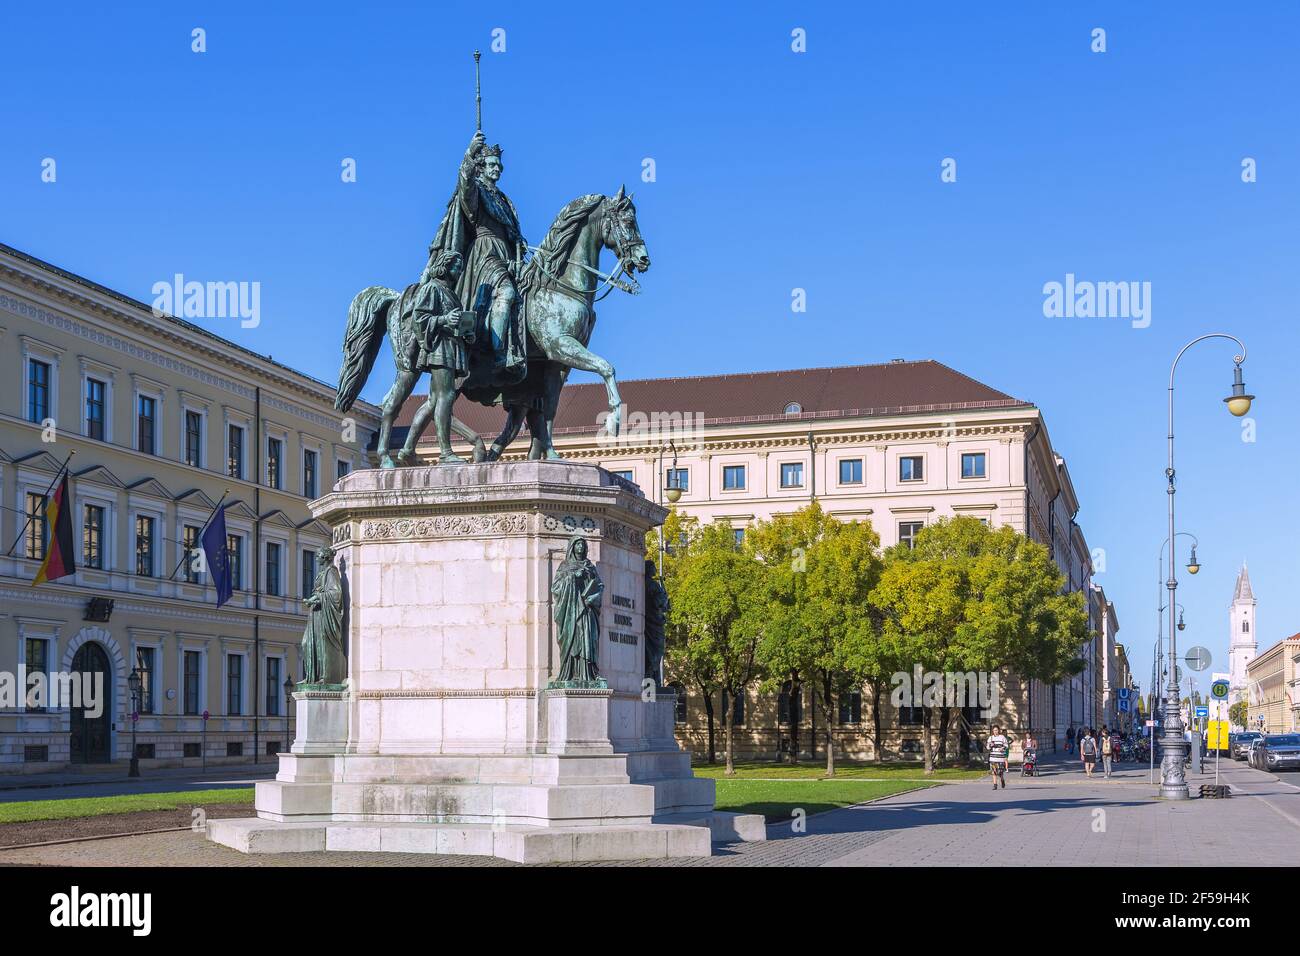 Geographie / Reisen, Deutschland, München, Odeonsplatz (Platz), Reiterdenkmal Louis I, Additional-Rights-Clearance-Info-not-available Stockfoto